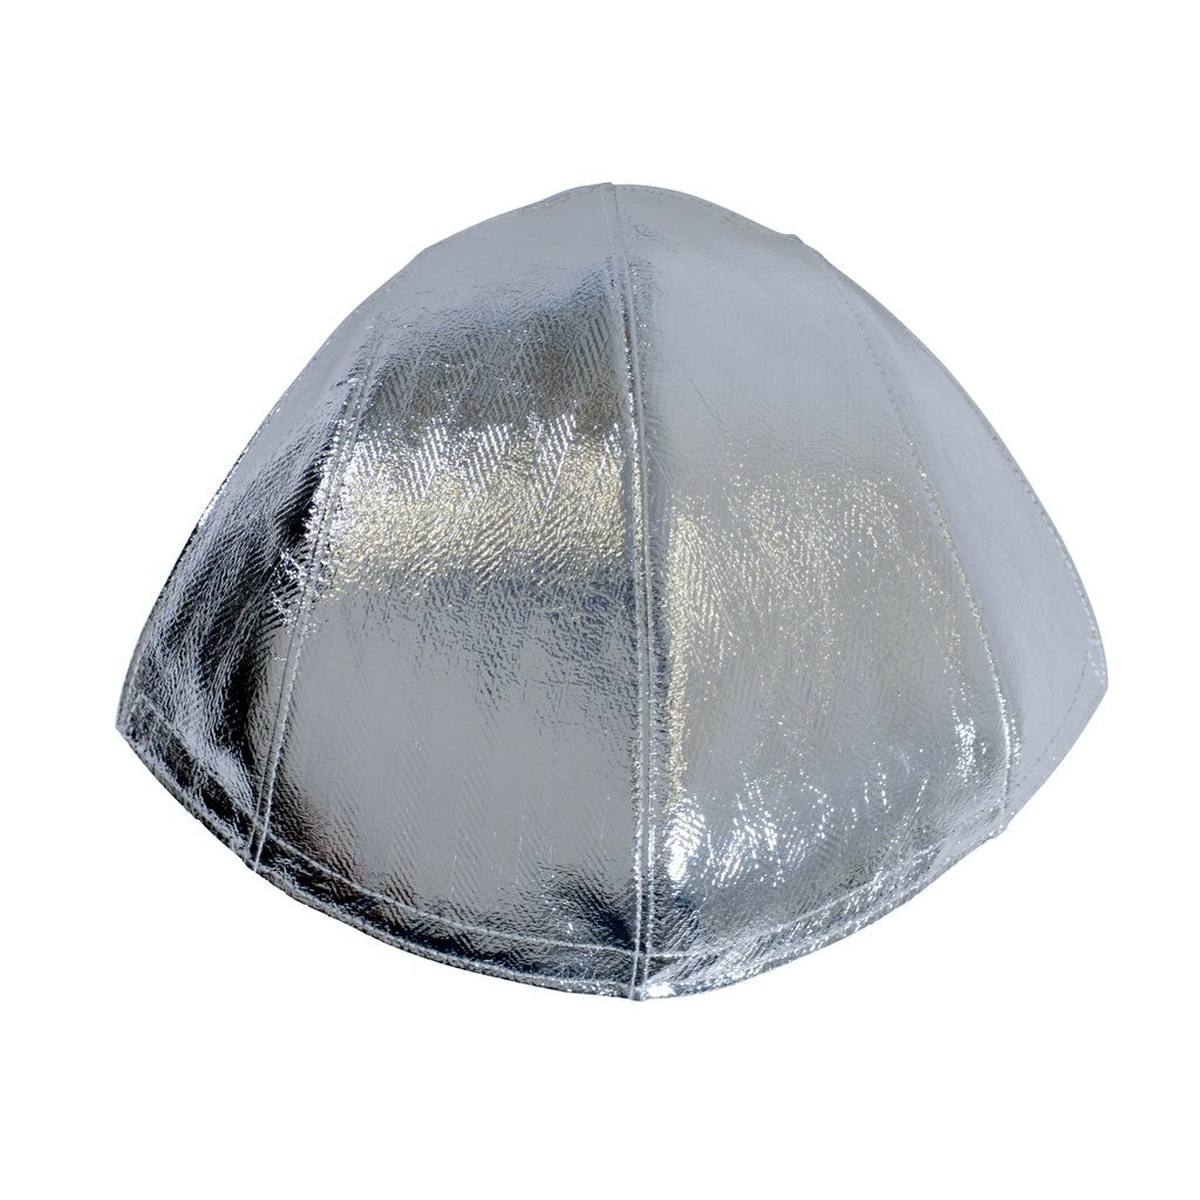 3M FC1-AL otsasuoja, alumiinia, suojaa kypärää ja käyttäjää liekeiltä, roiskeilta ja infrapunalta